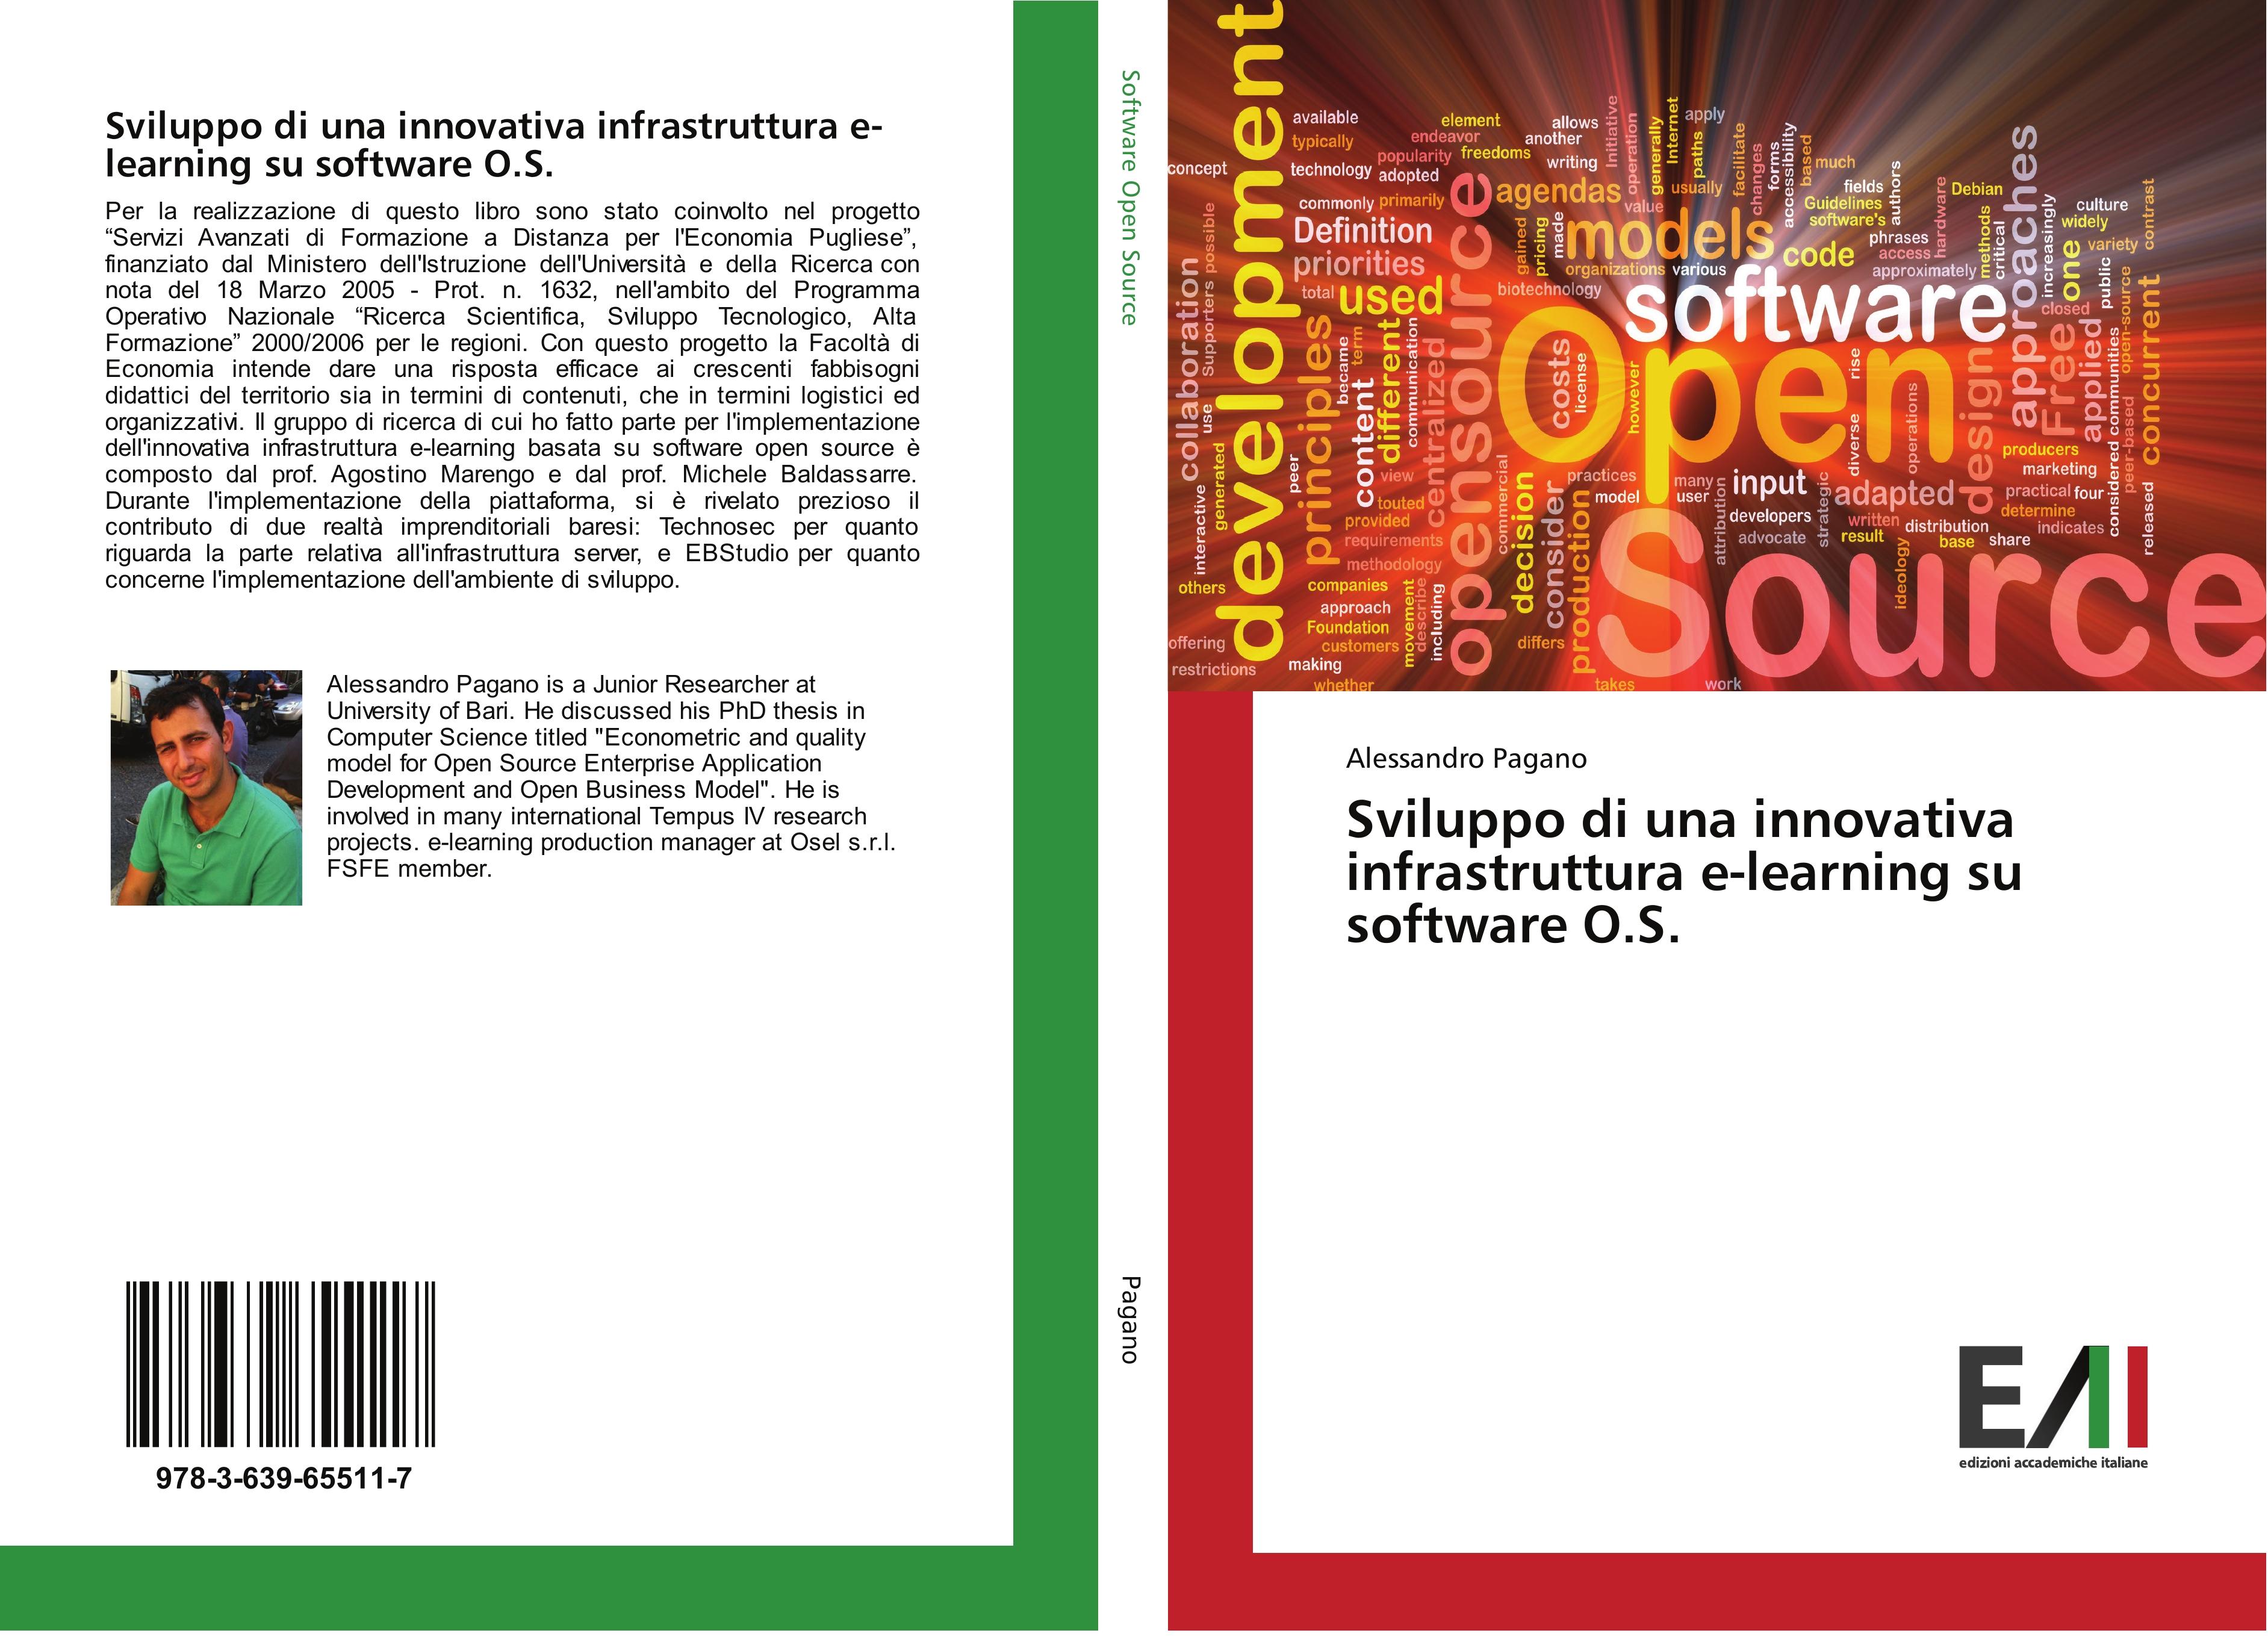 Sviluppo di una innovativa infrastruttura e-learning su software O.S. - Pagano, Alessandro